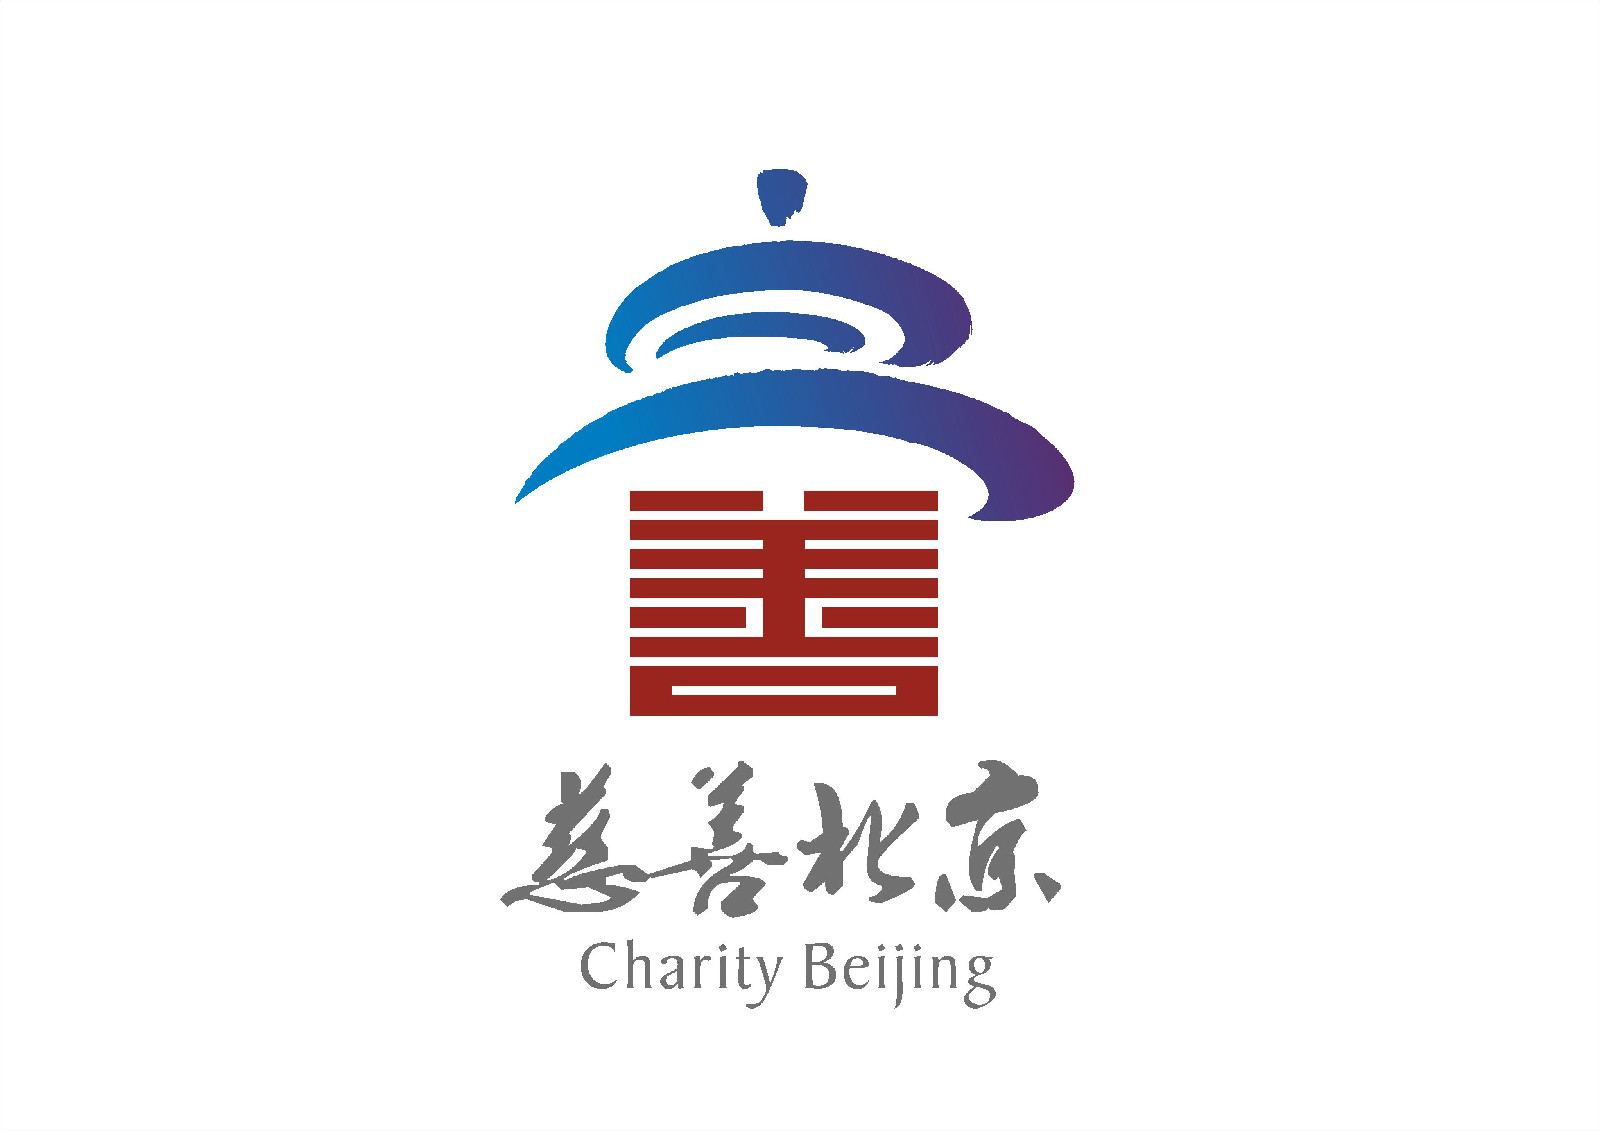 第二屆慈善北京公益慈善圖片巡展